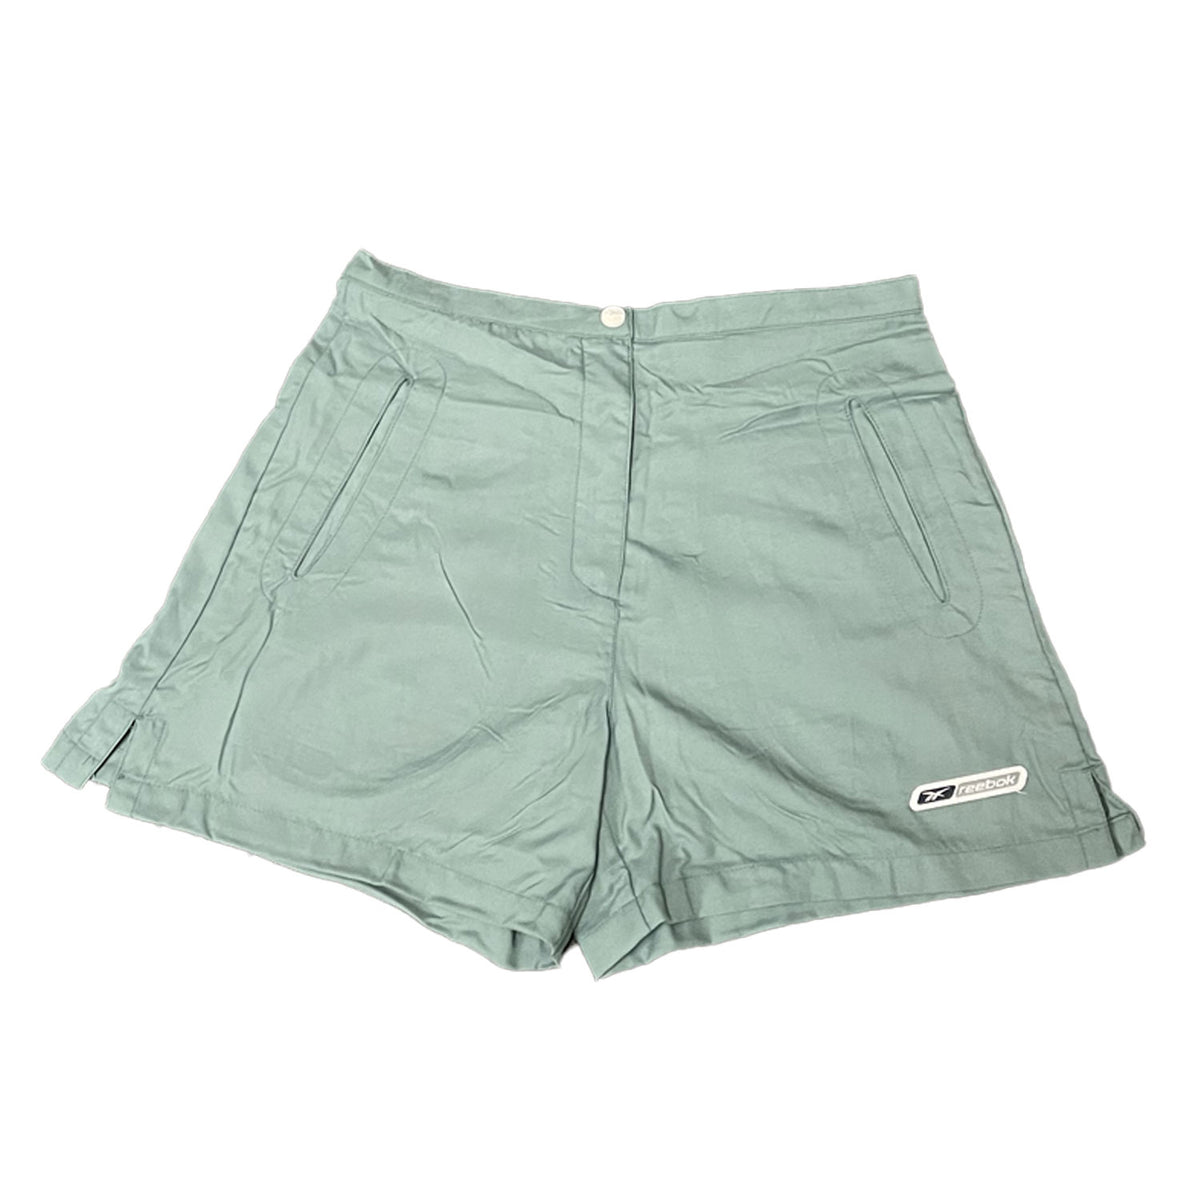 Reebok Womens Shorts - Green - UK Size 12